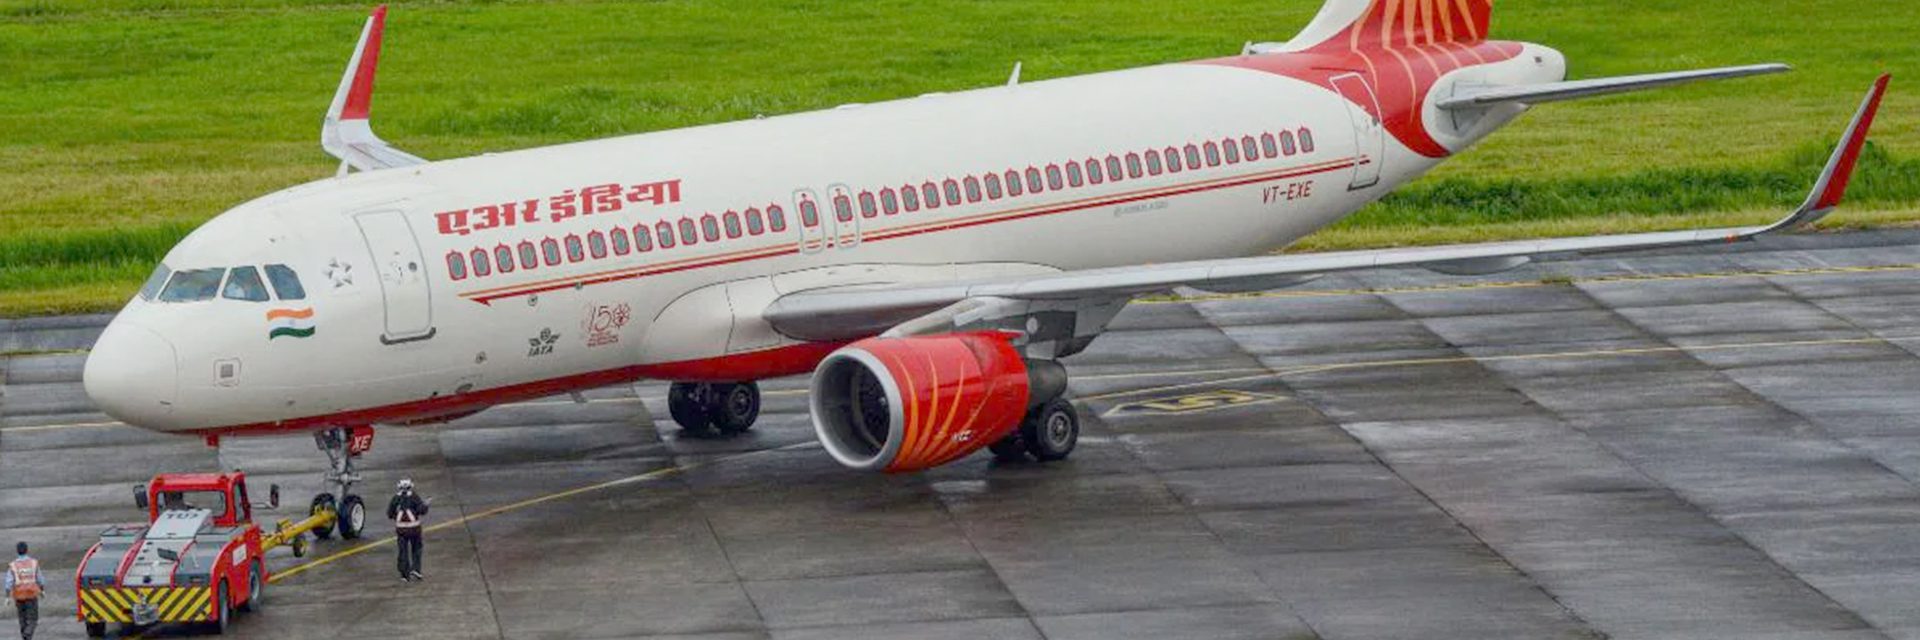 Tracing Air India